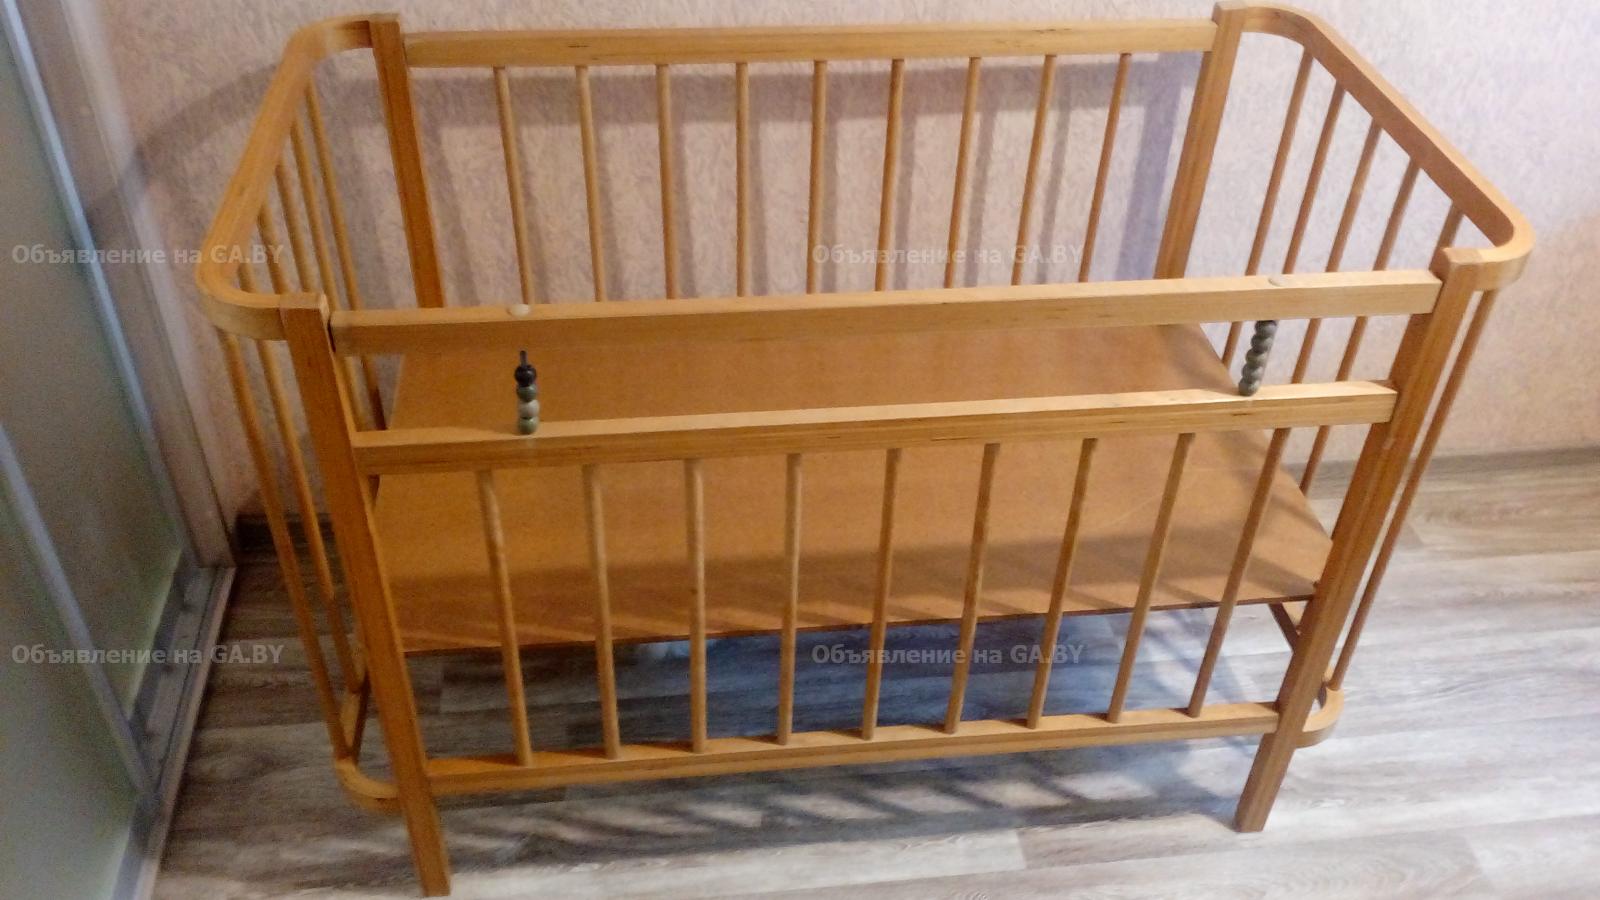 Продам Кроватка для малыша - GA.BY